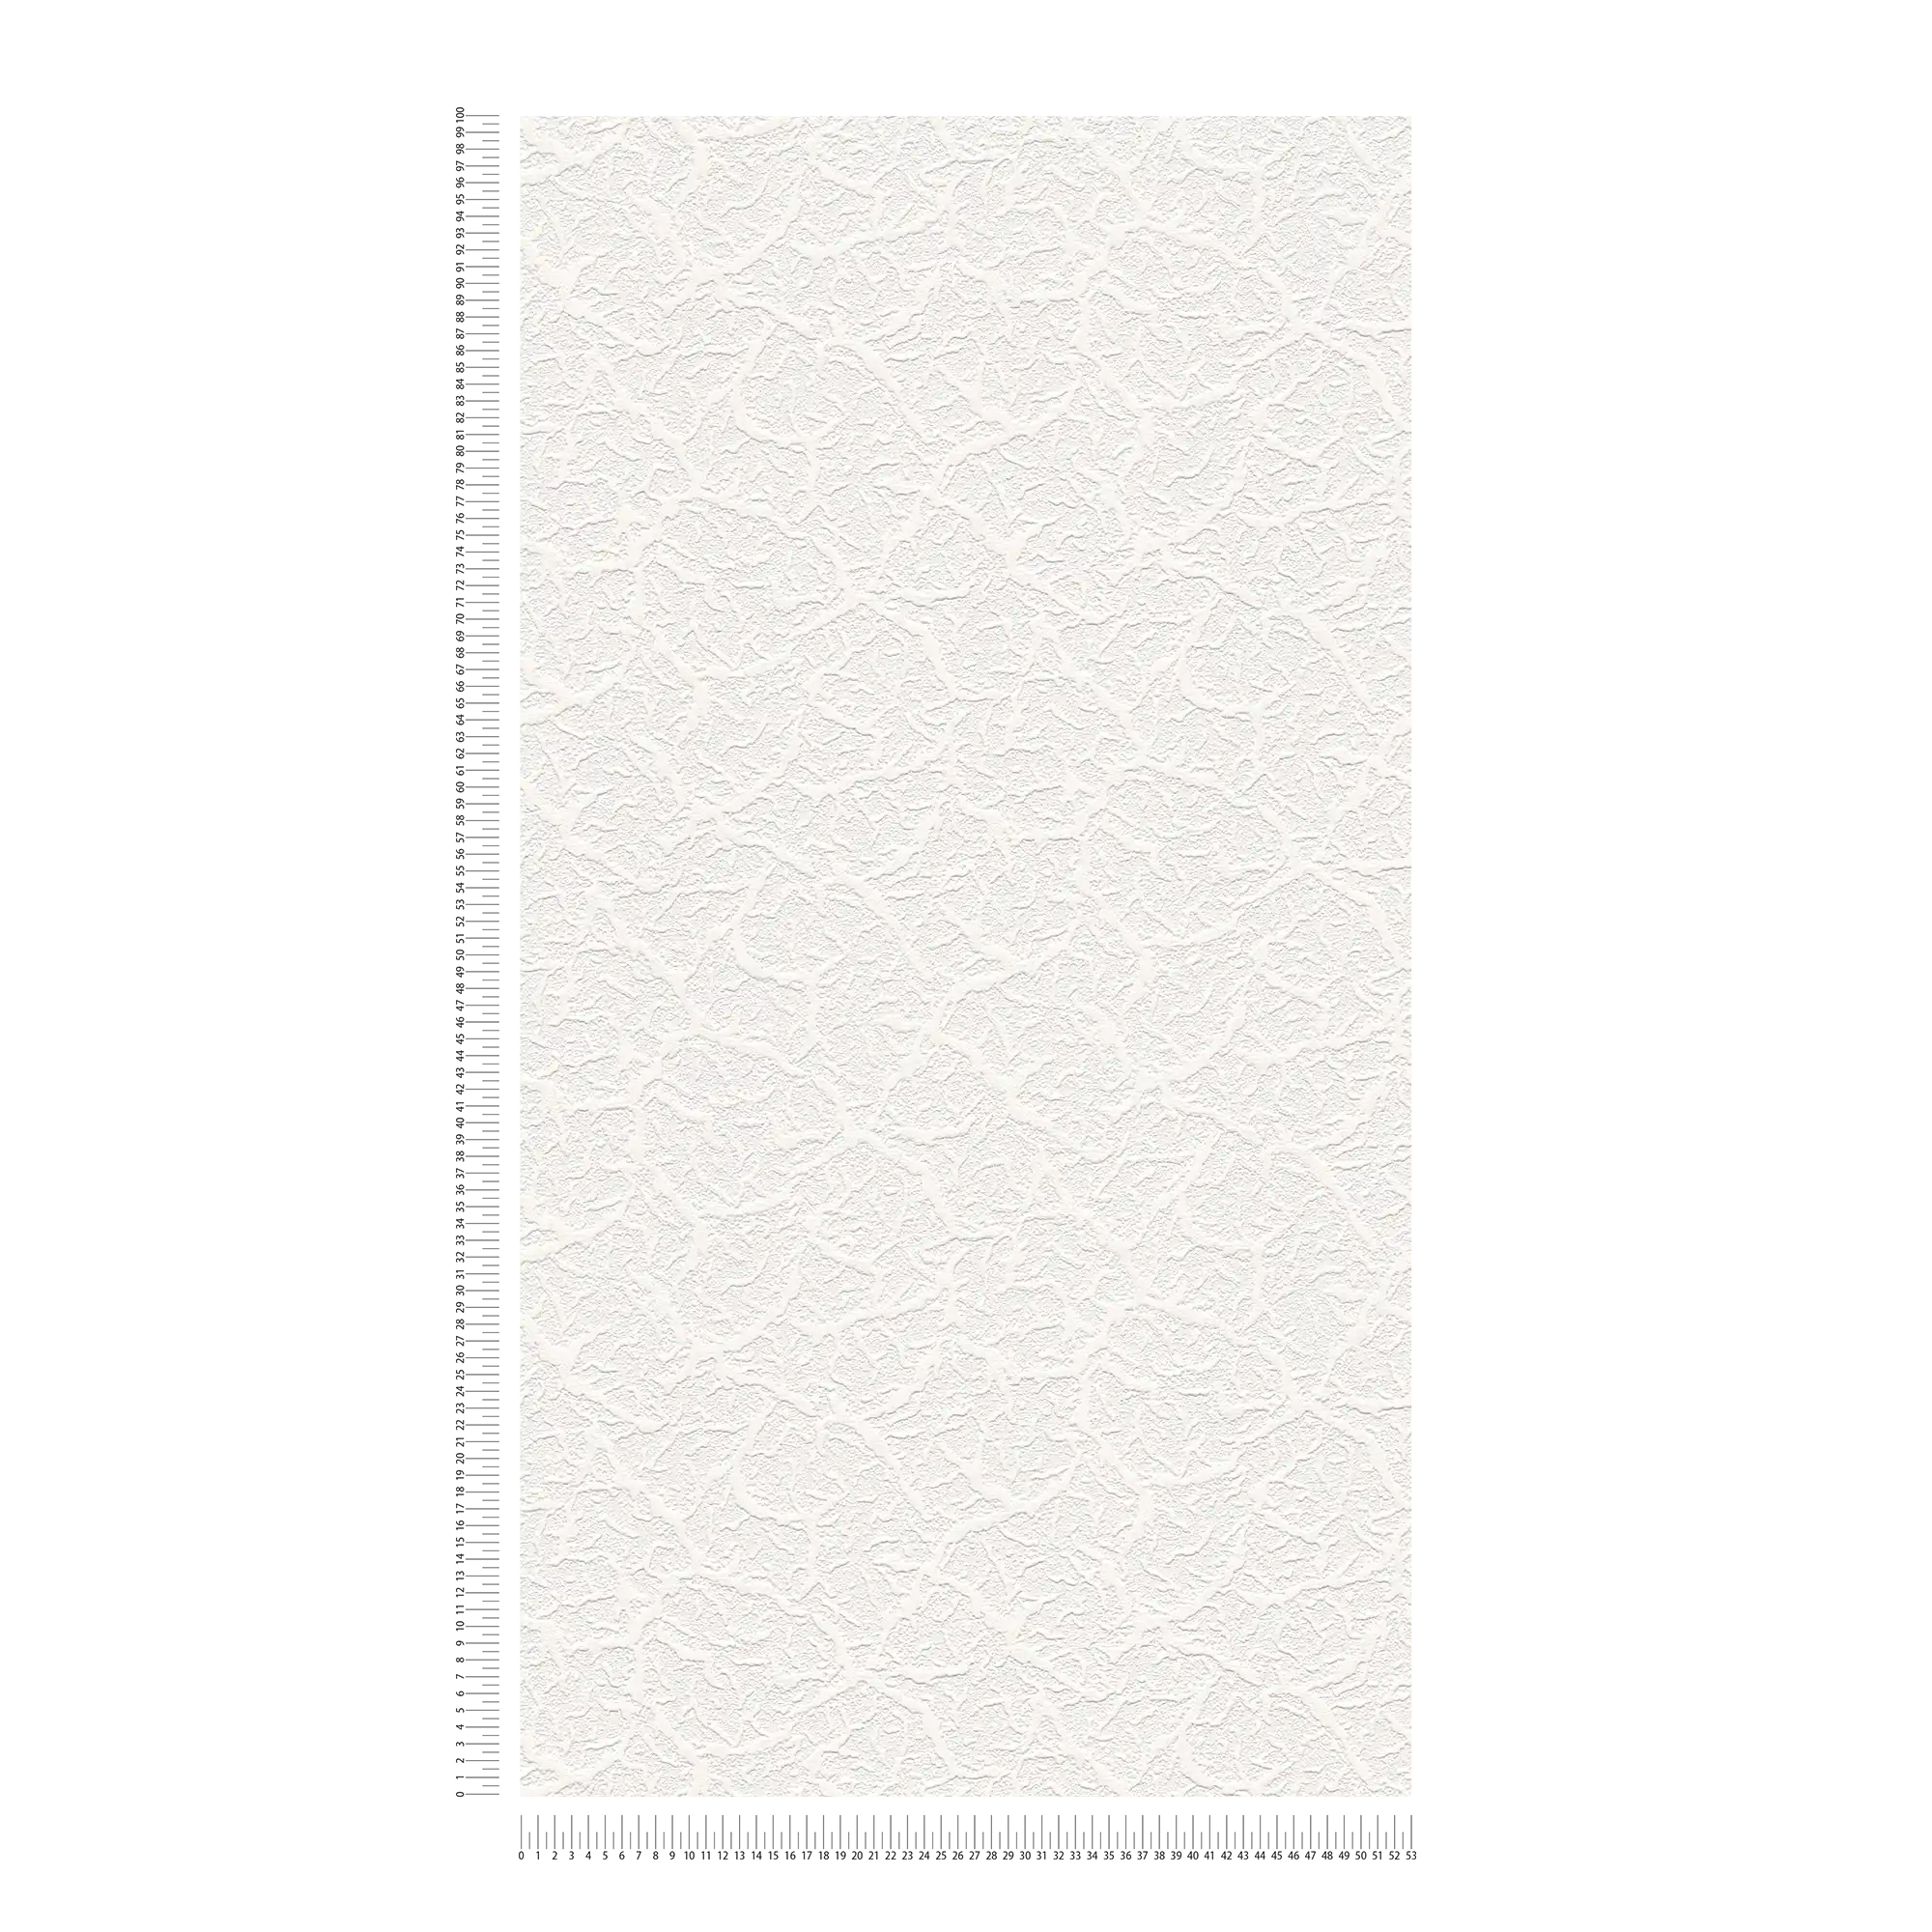             Papierbehang wit met natuurlijke structuur design
        